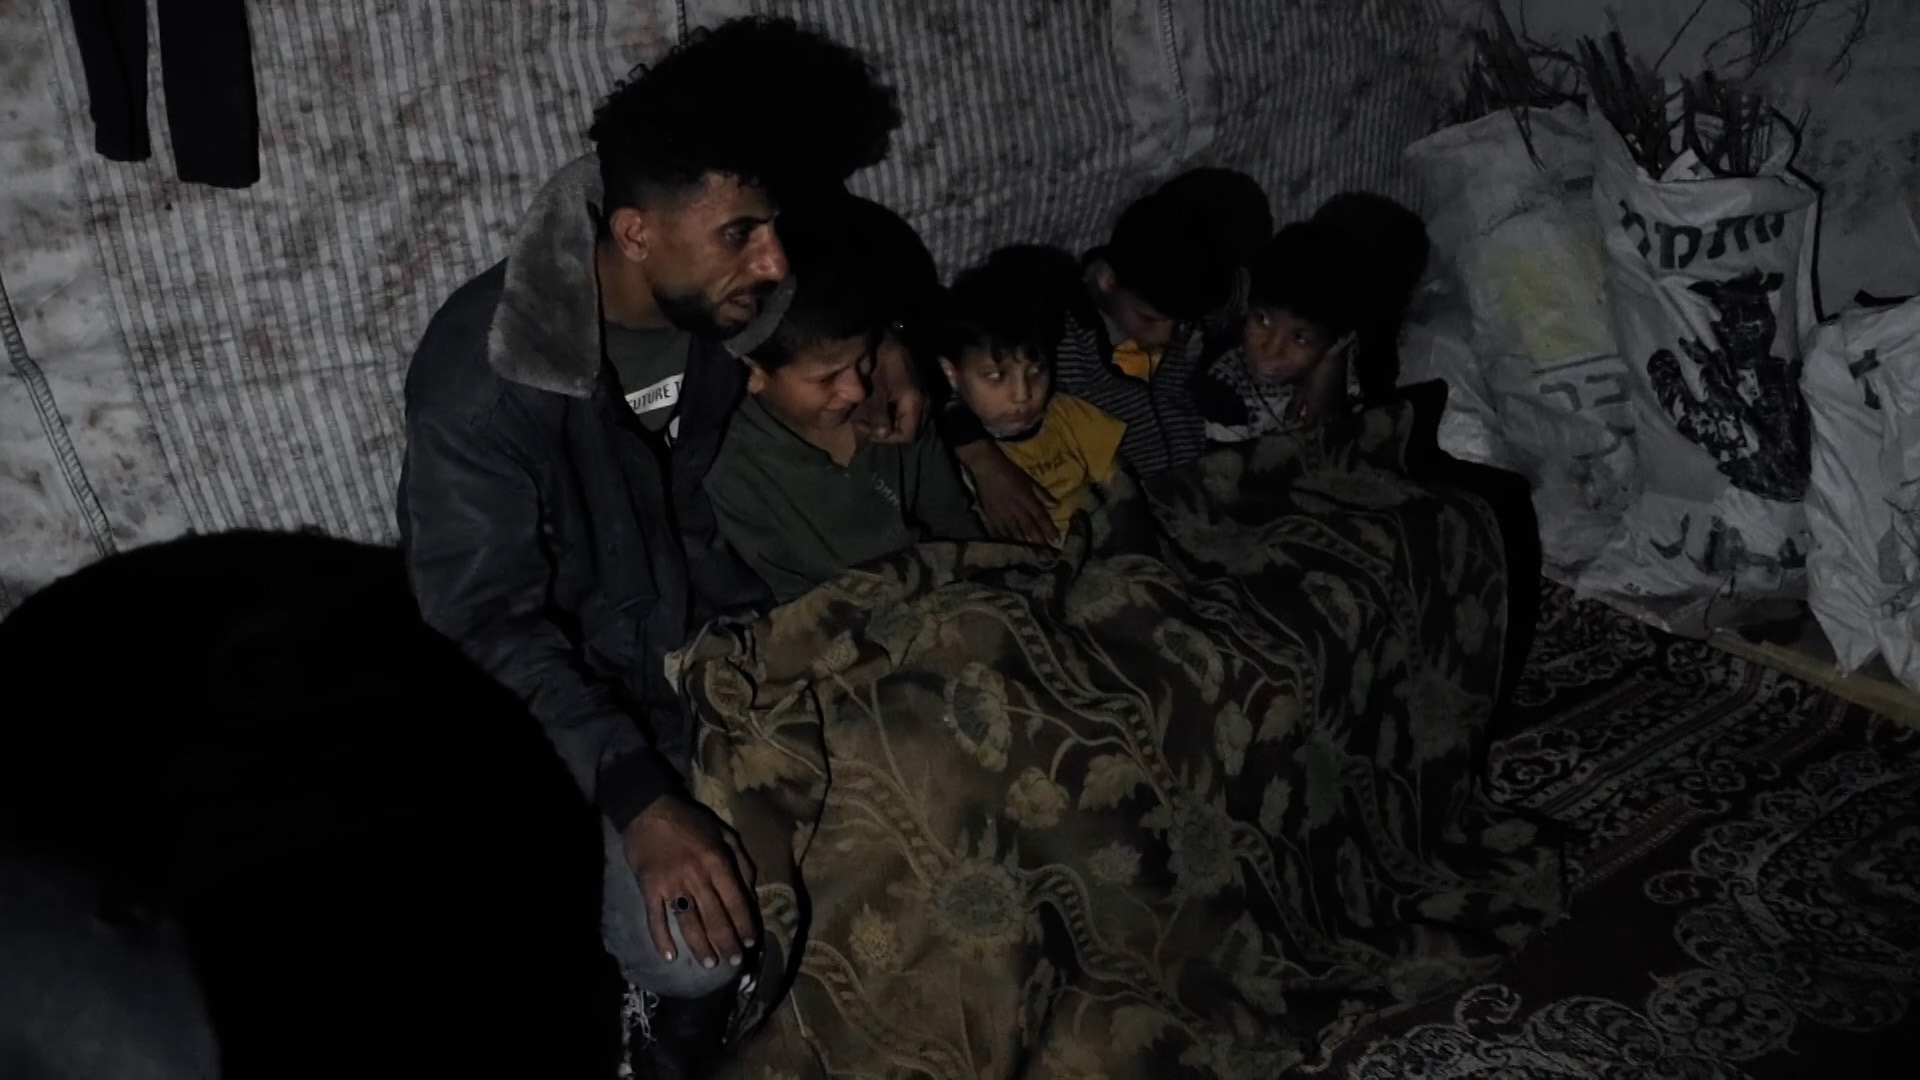 الشتاء يضاعف معاناة النازحين في مخيمات الإيواء بقطاع غزة | البرامج – البوكس نيوز